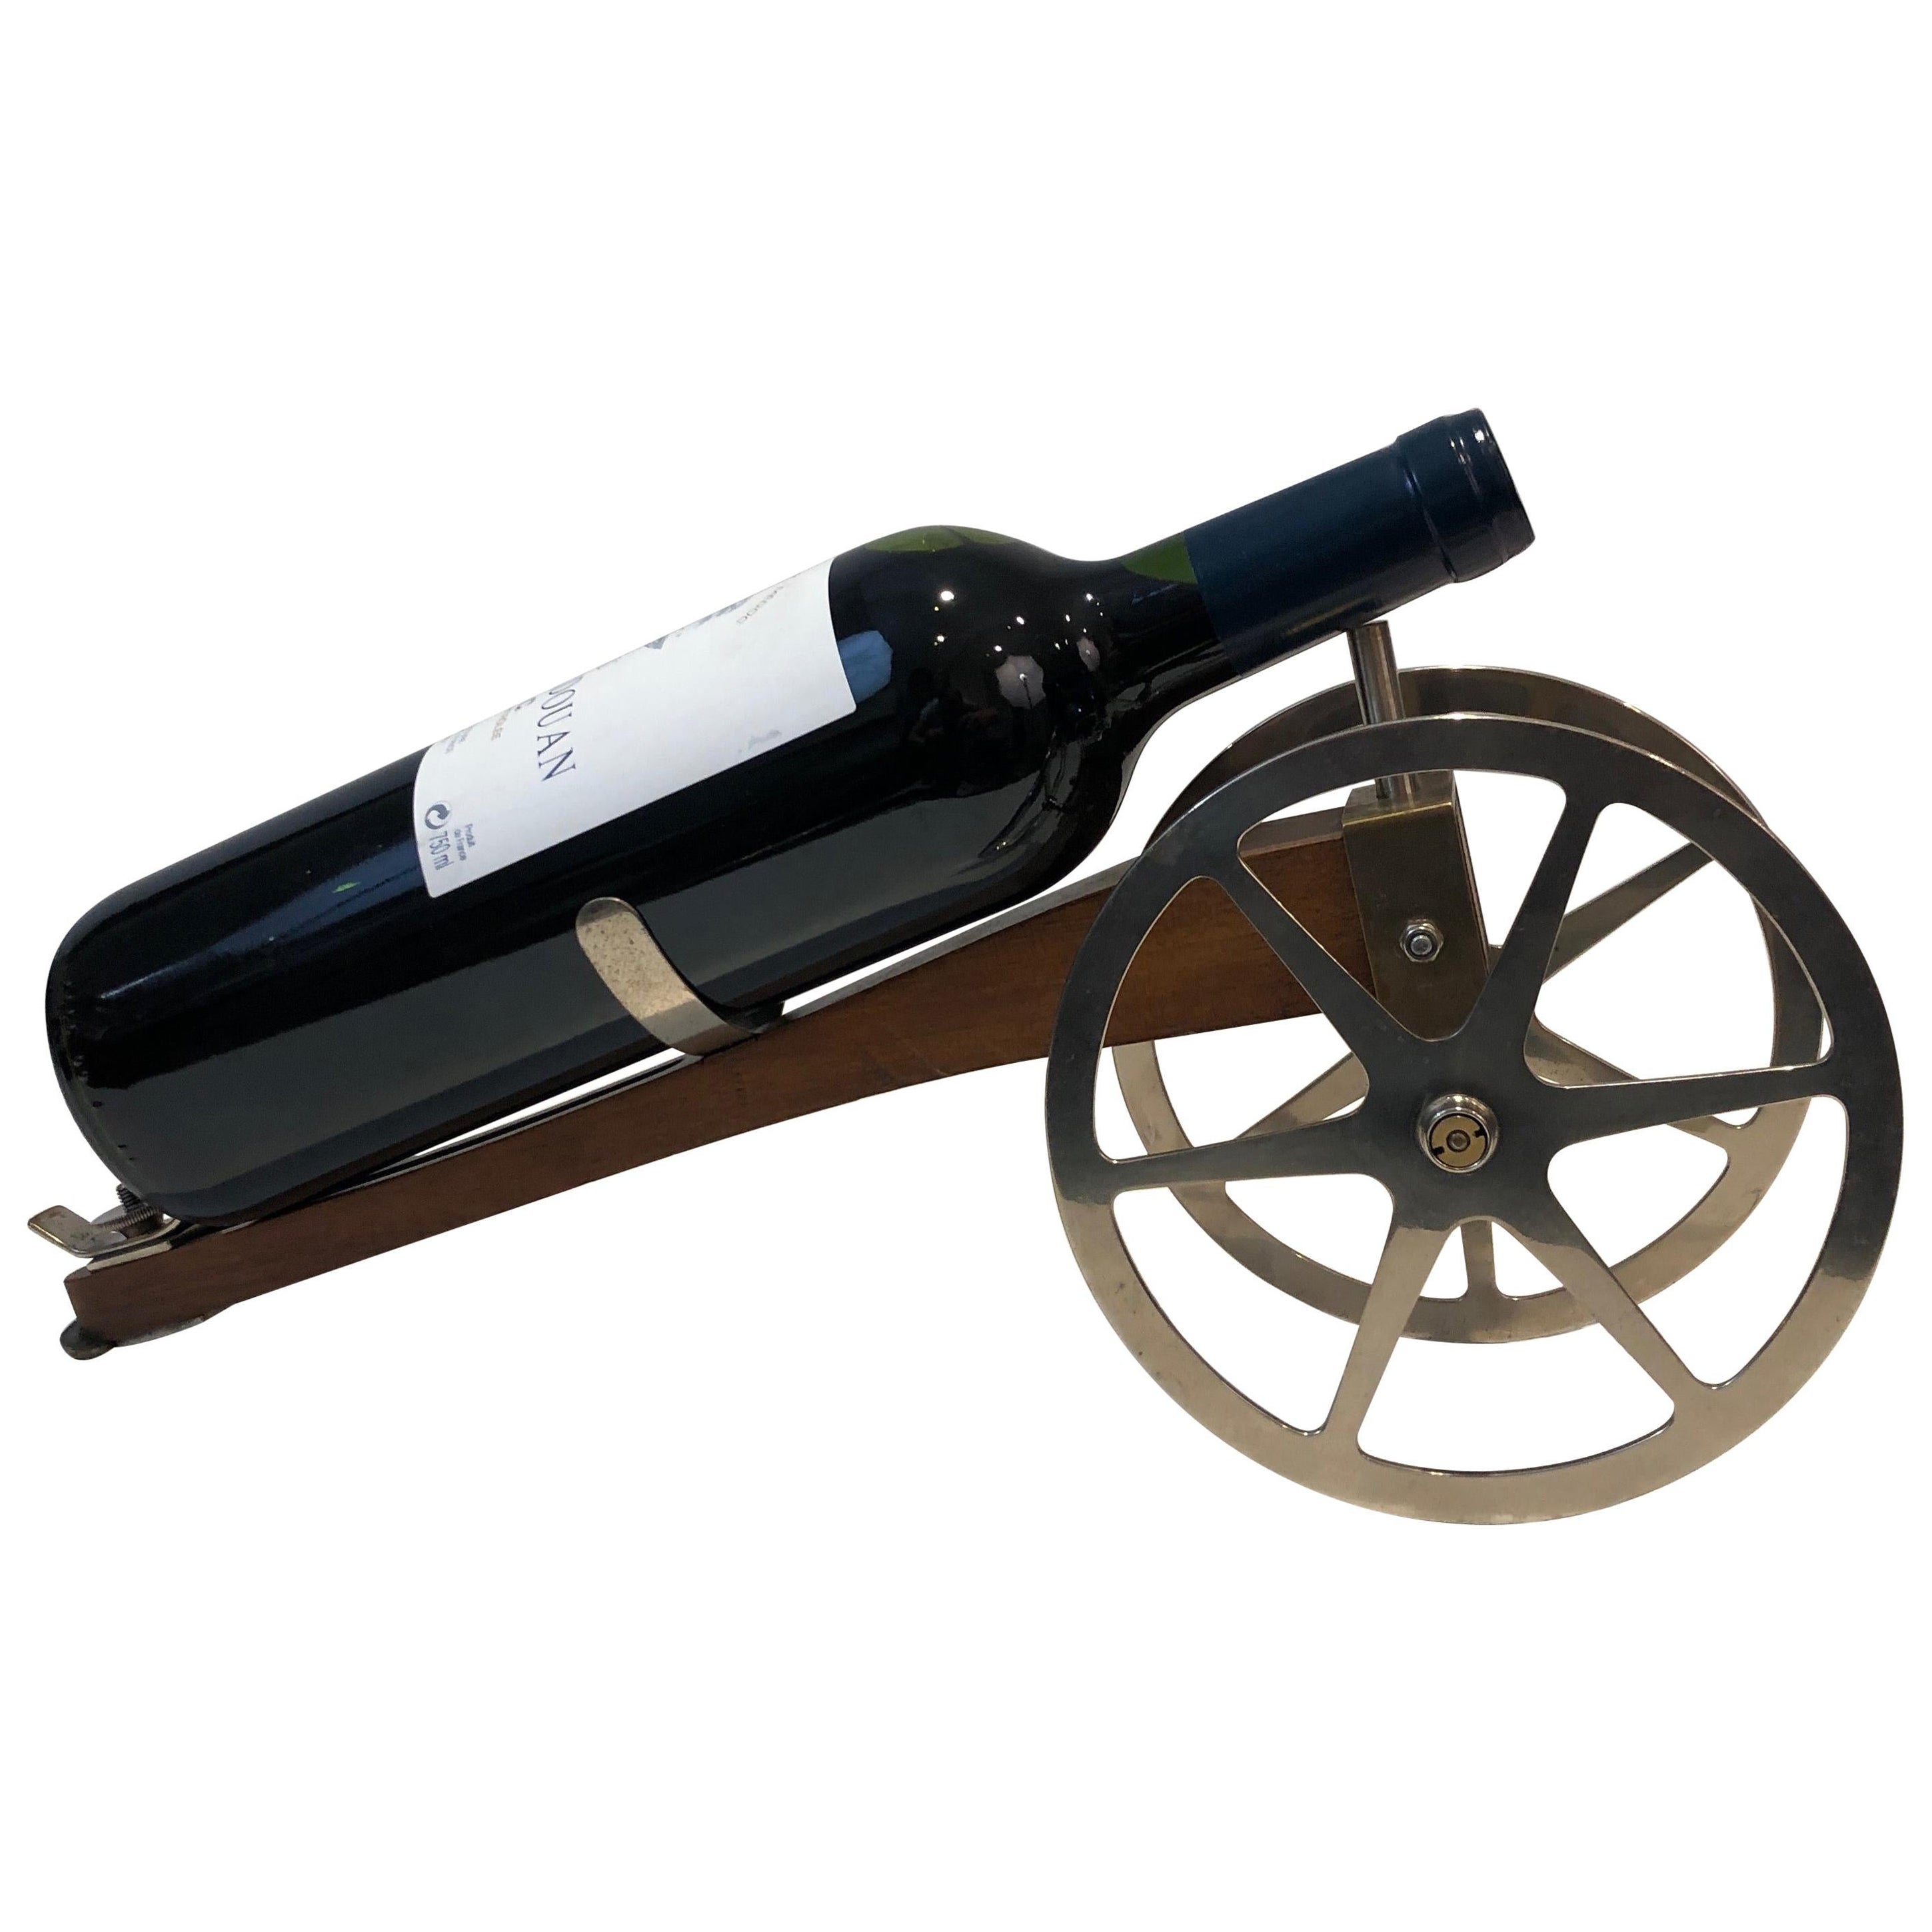 Kanonenflaschenhalter aus Holz, Chrom und Messing, Französisch, markiert H Hauger Paris, ca.